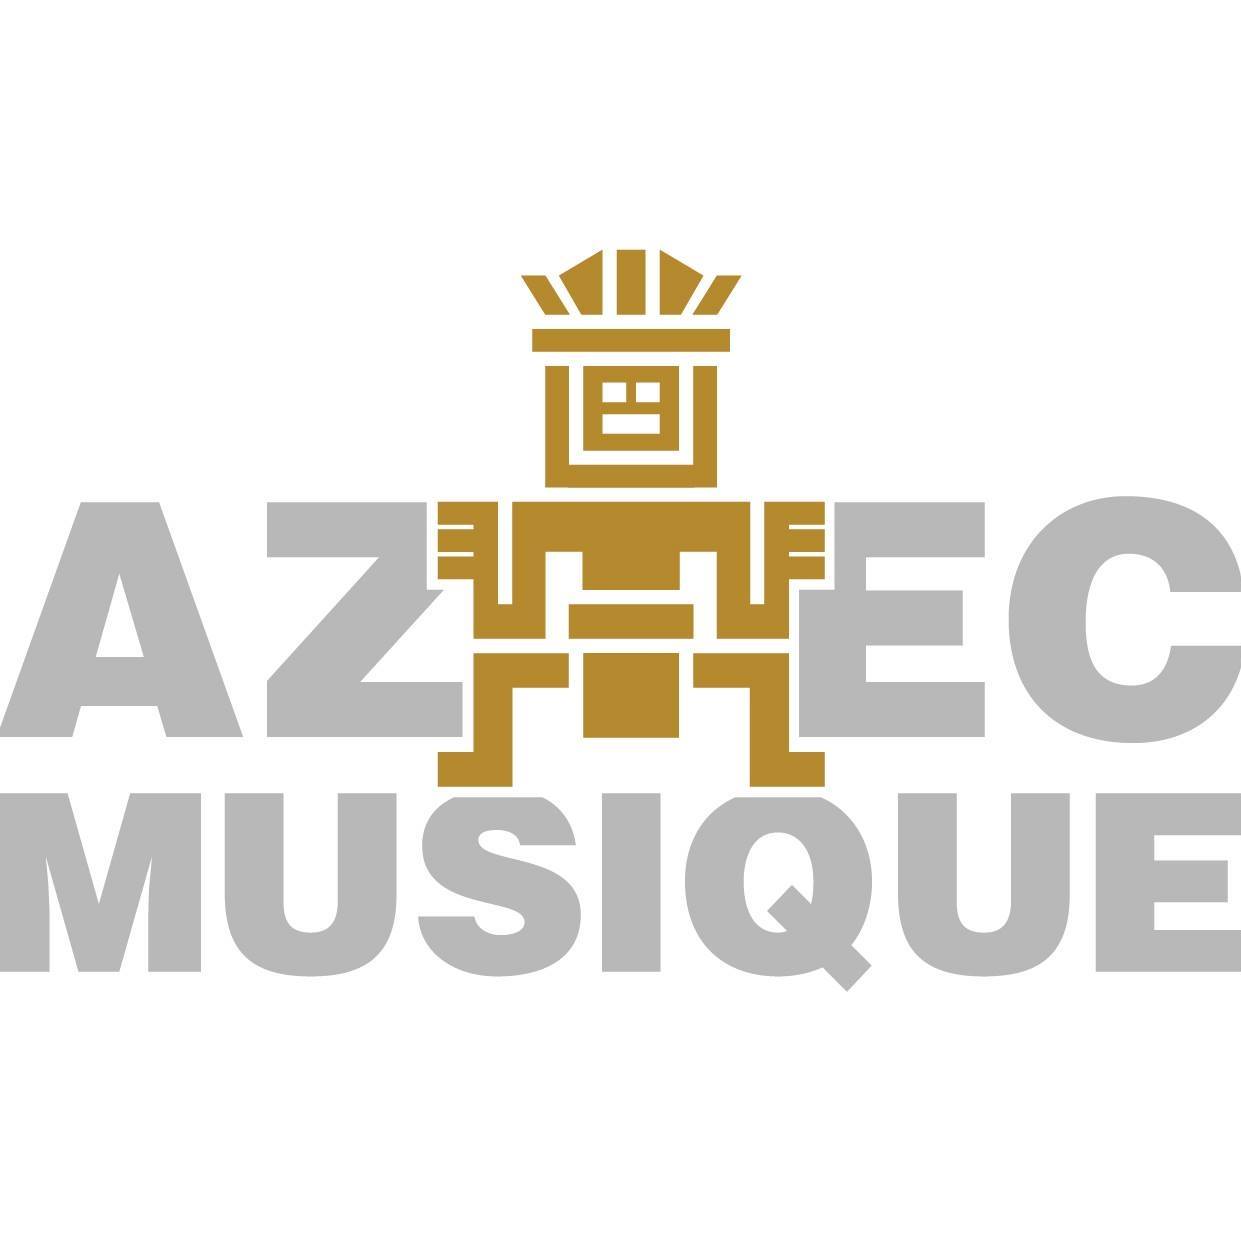 AZTEC MUSIQUE